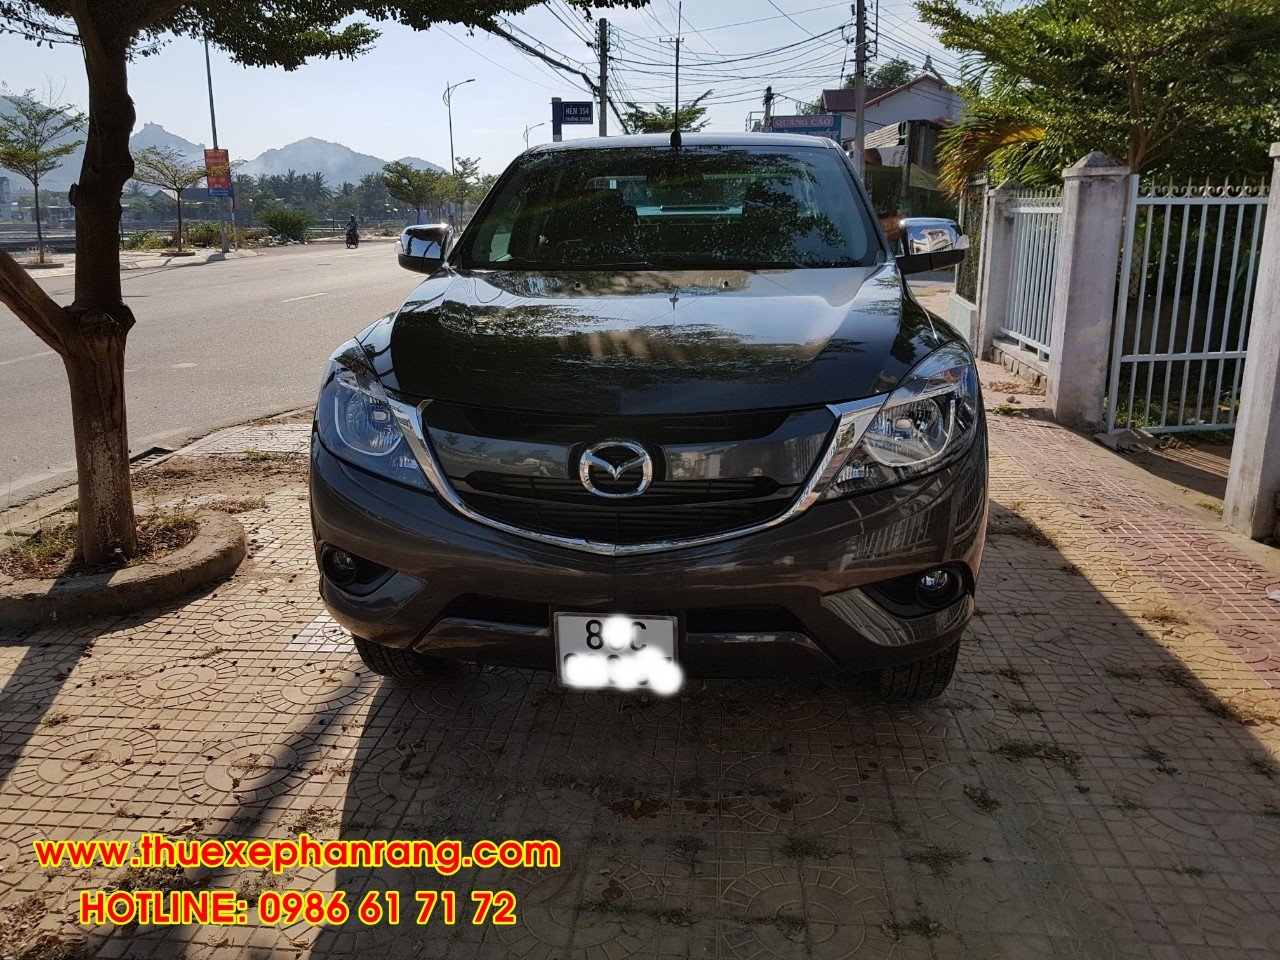 Cho thuê xe ô tô 7 chỗ giá rẻ, chất lượng cao tại huyện Bác Ái Ninh Thuận